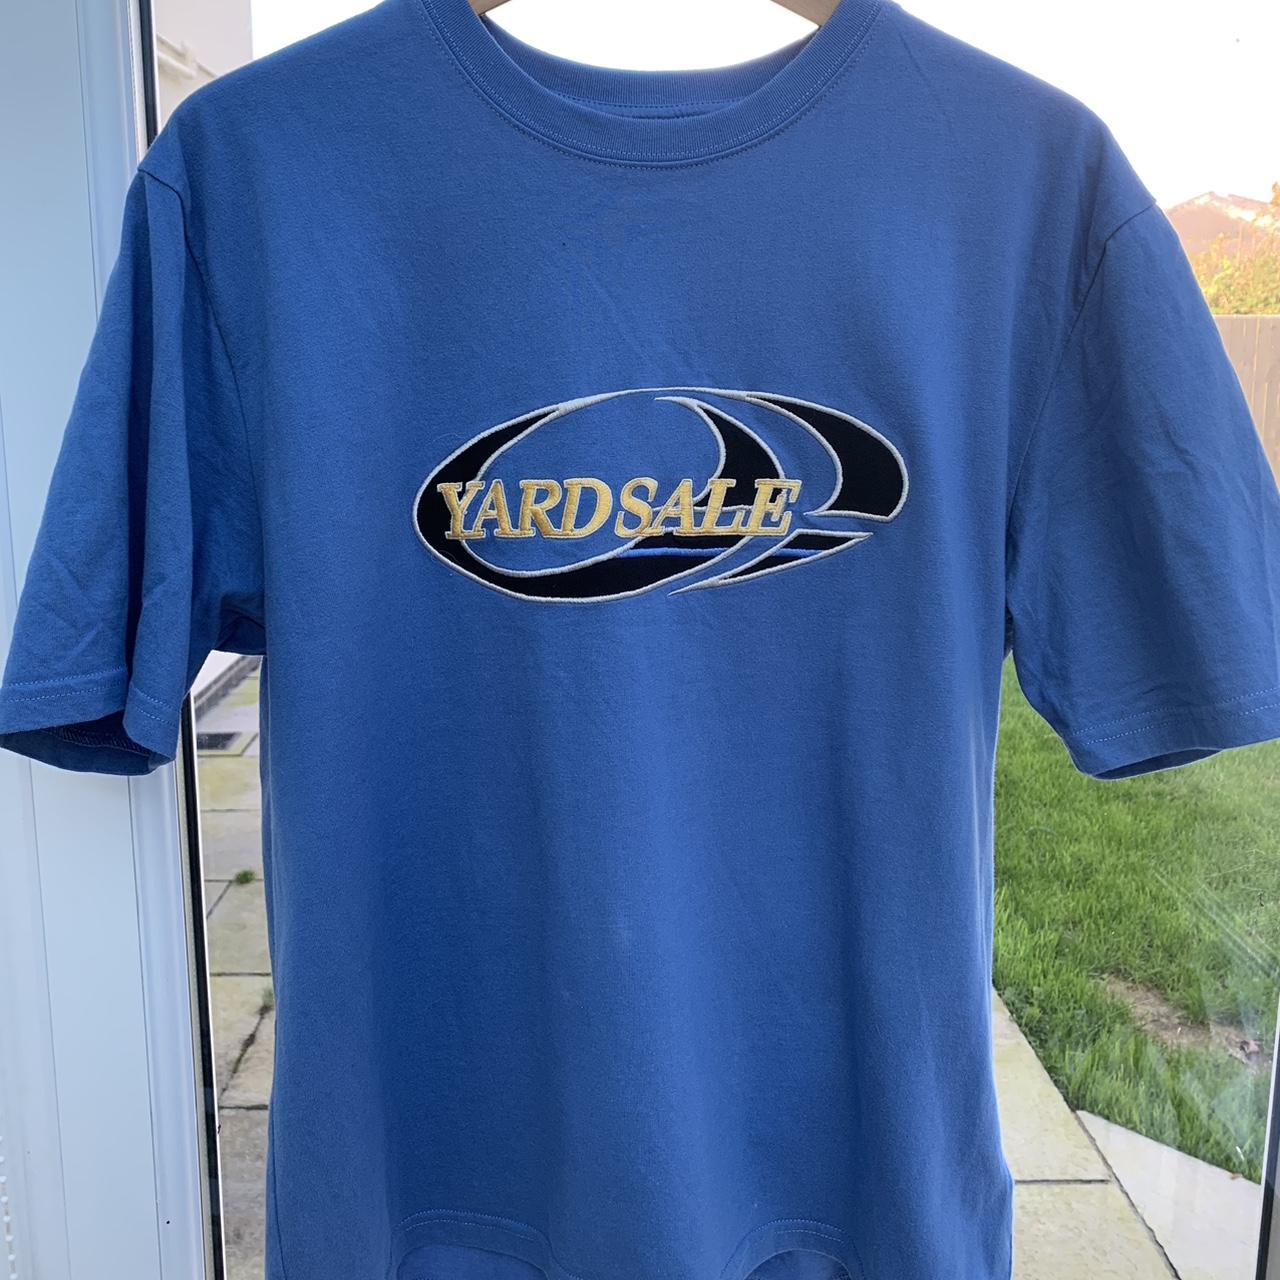 Yardsale tee in blue, size S - Depop